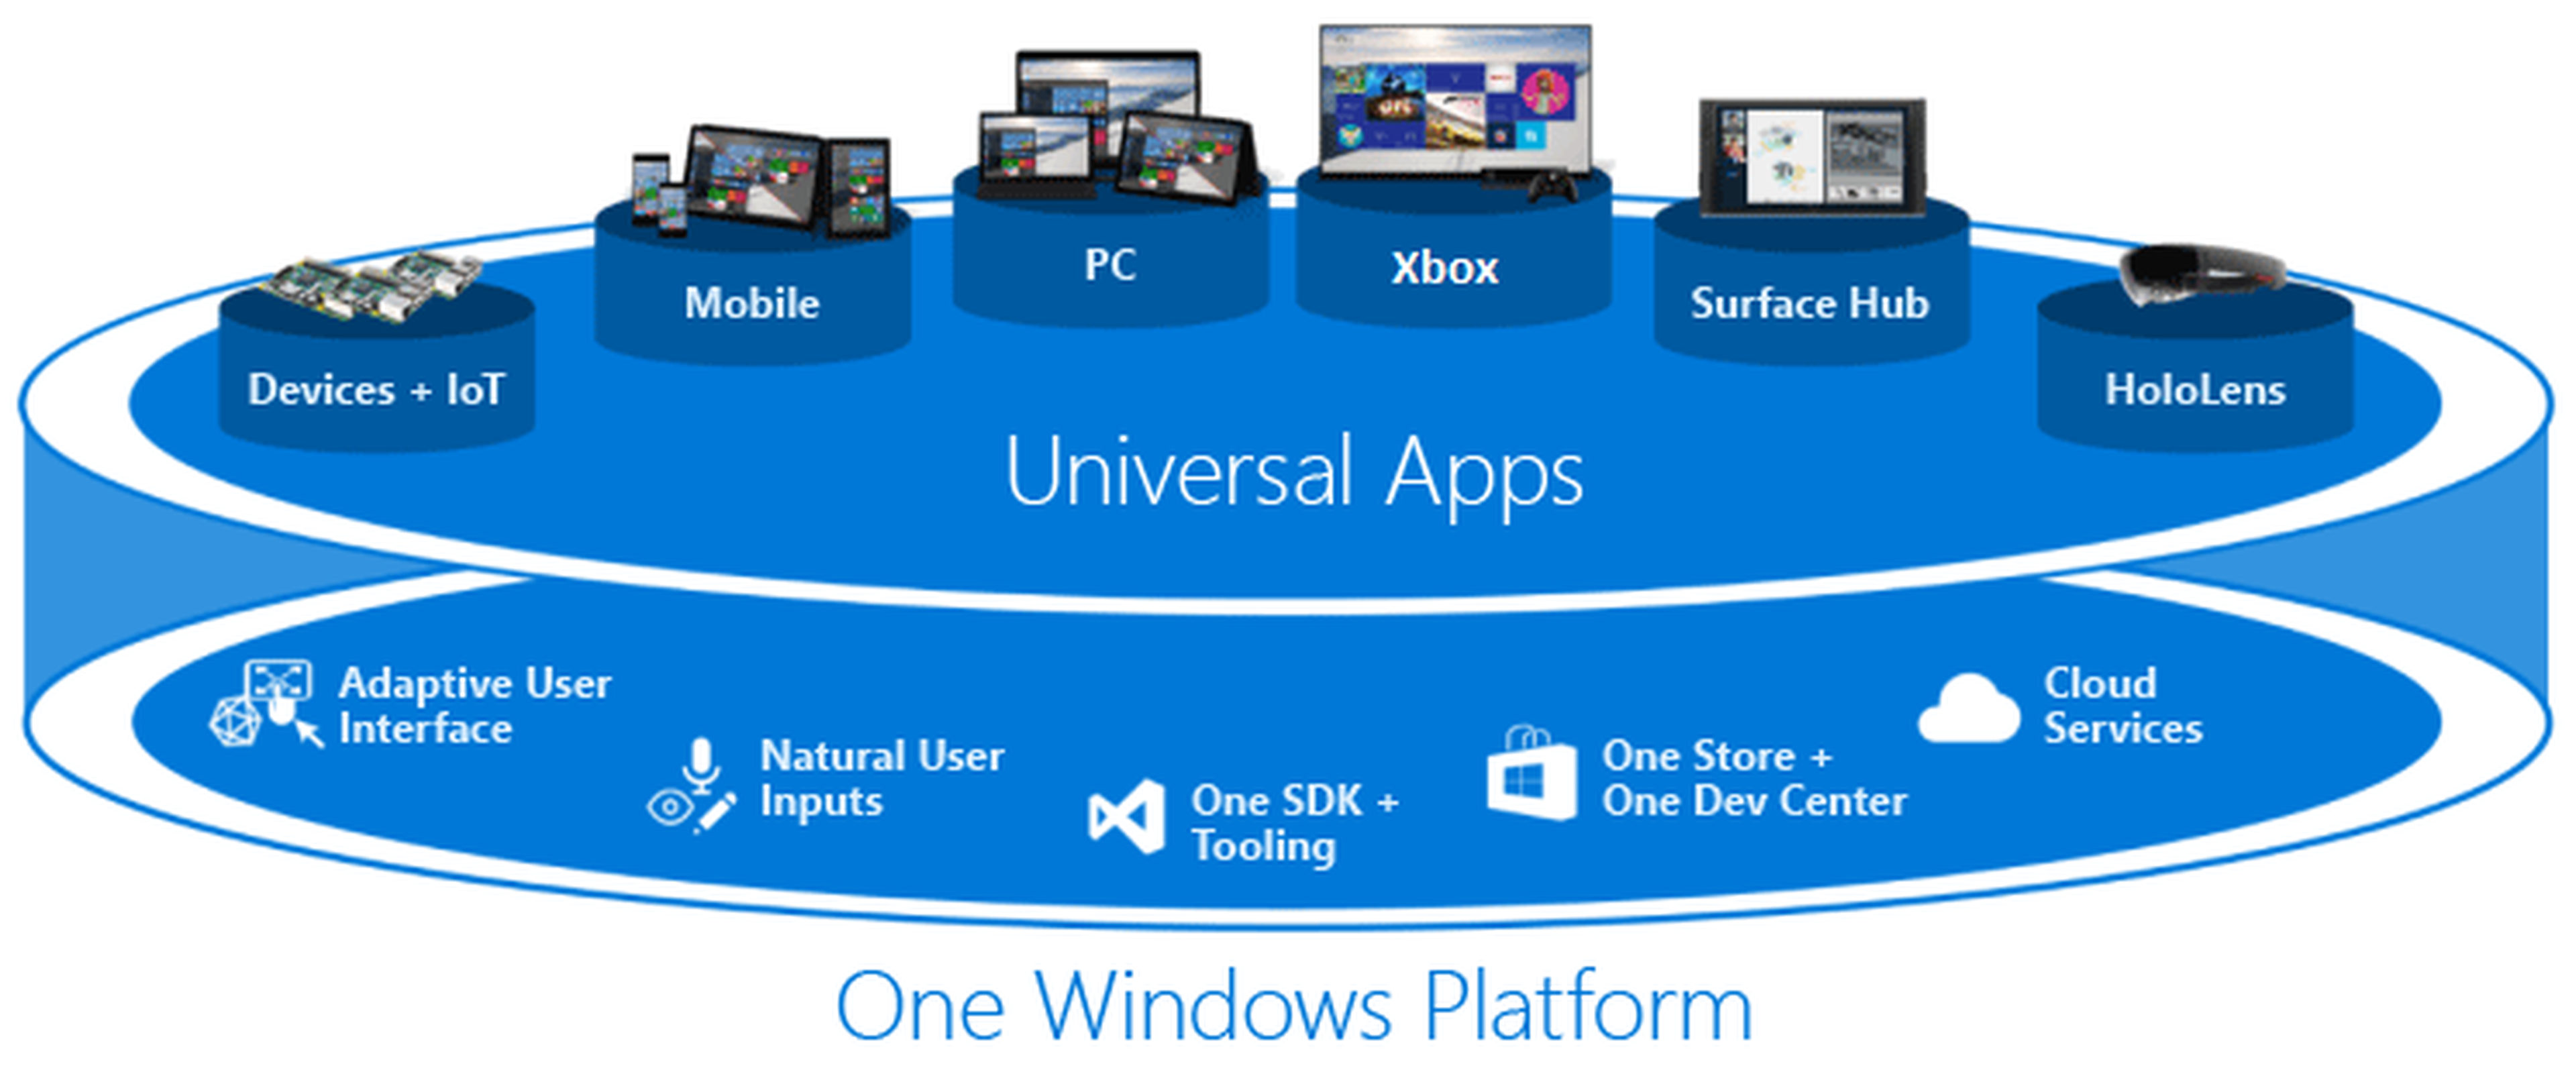 Una plataforma, Windows, con distintos dispositivos. Este es el ecosistema que quiere crear Microsoft.